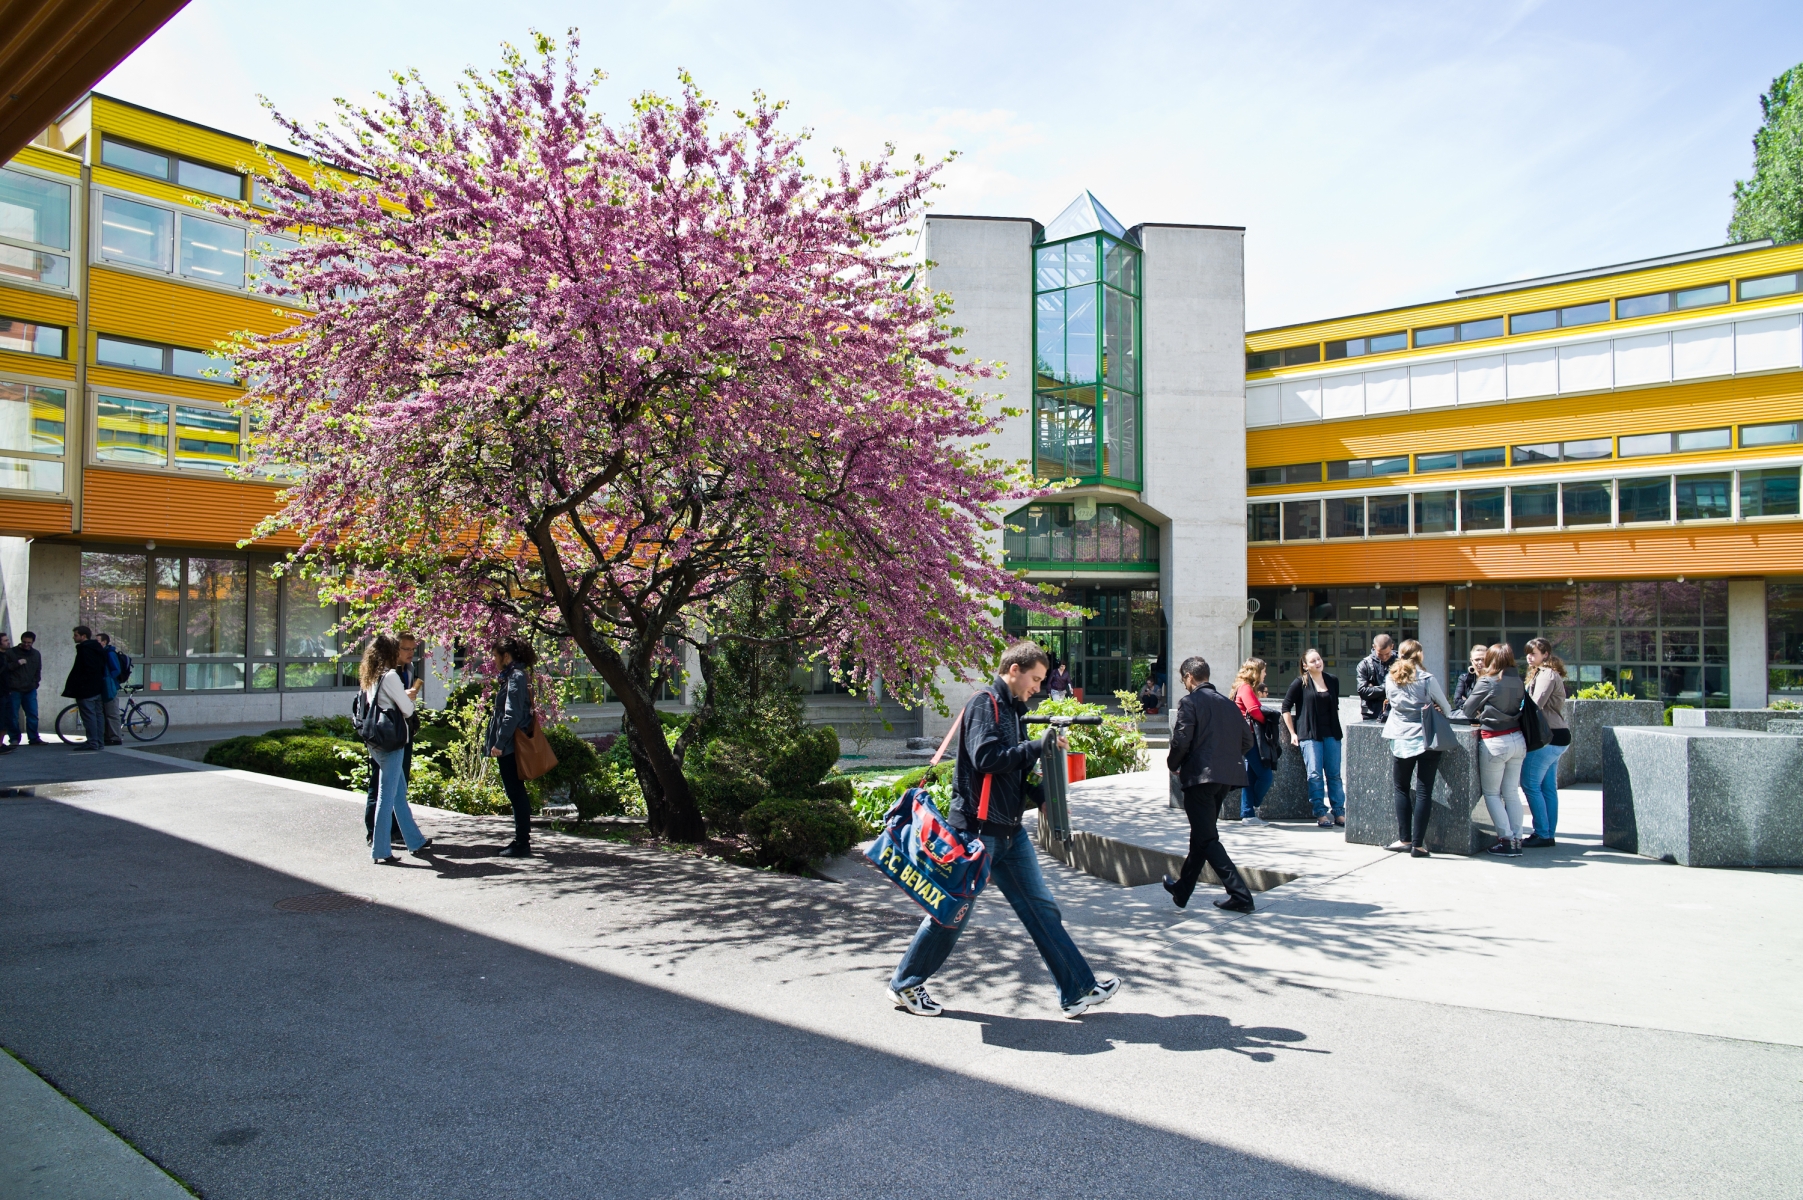 Après "Survie de plantes" entre 2001 et 2013, l'Université de Neuchâtel aura le pôle de recherche national "On the Move".